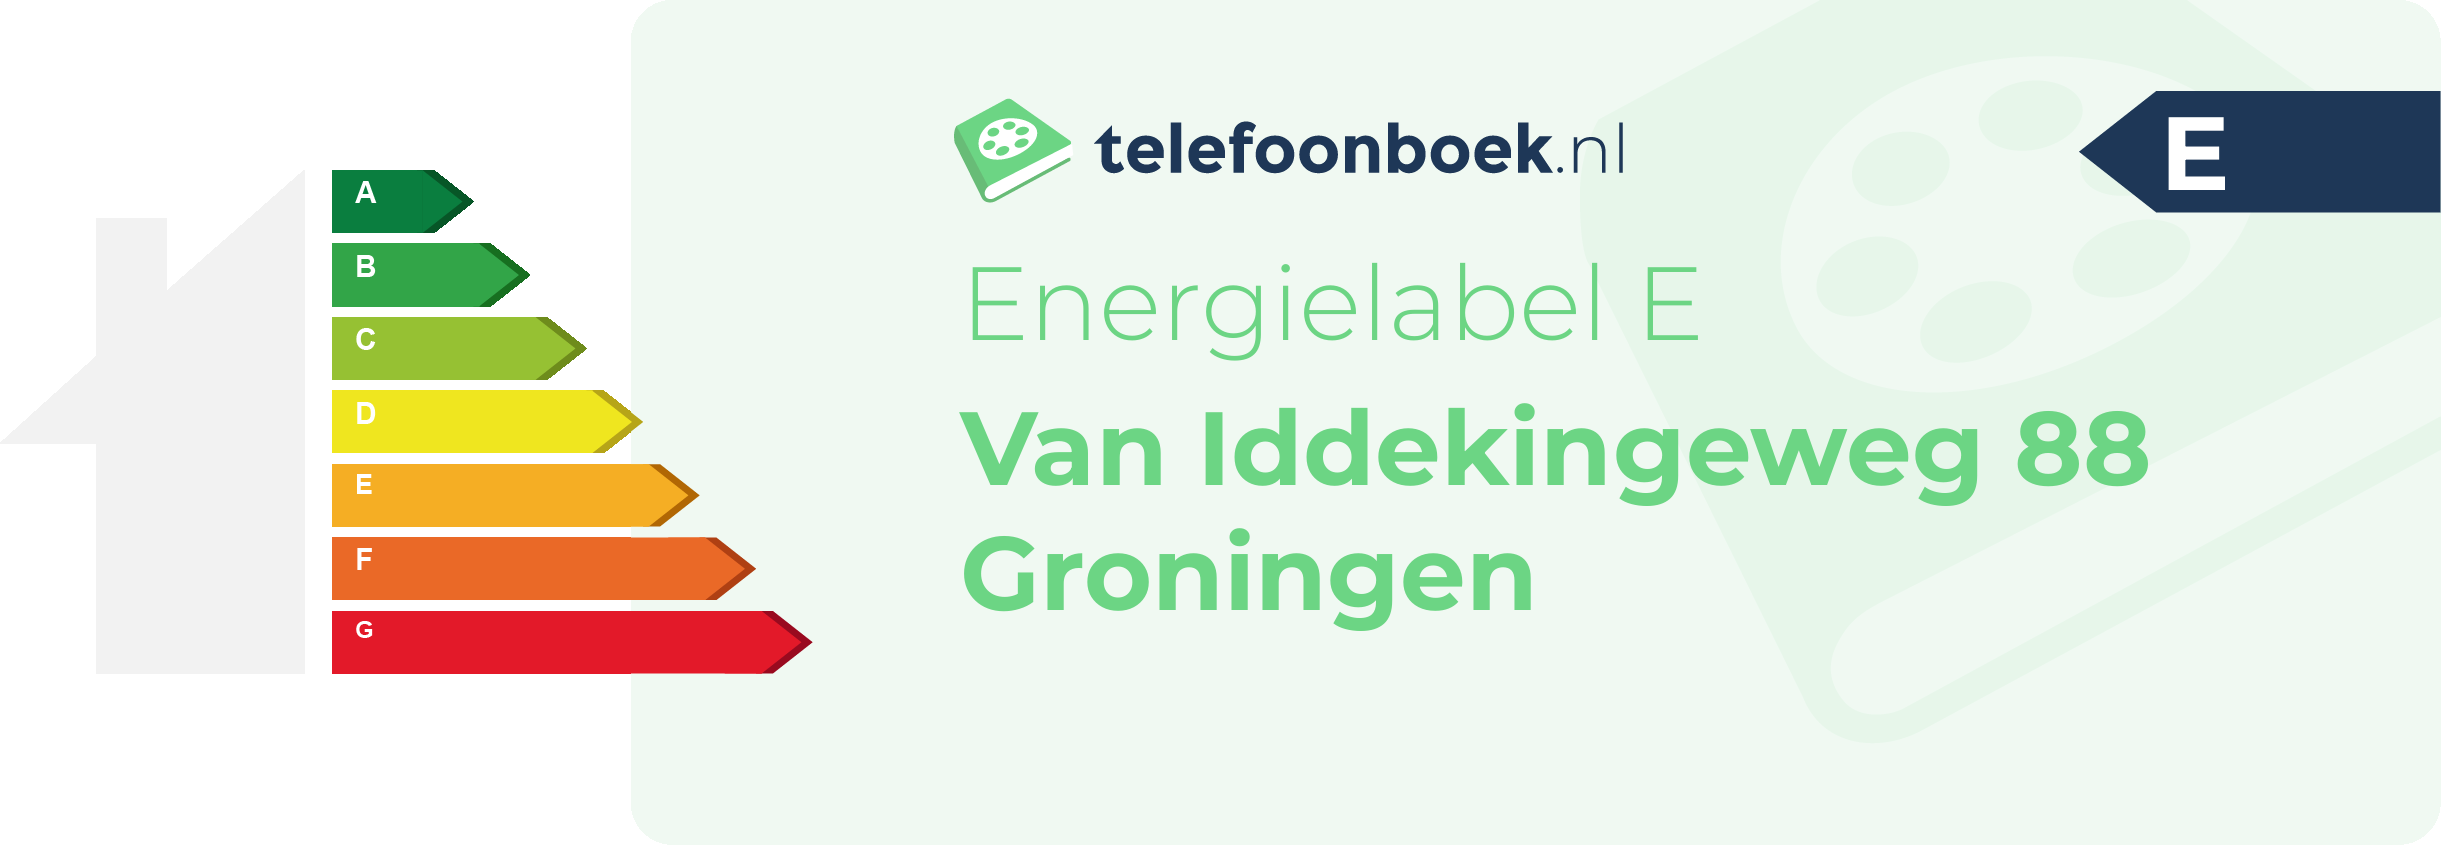 Energielabel Van Iddekingeweg 88 Groningen